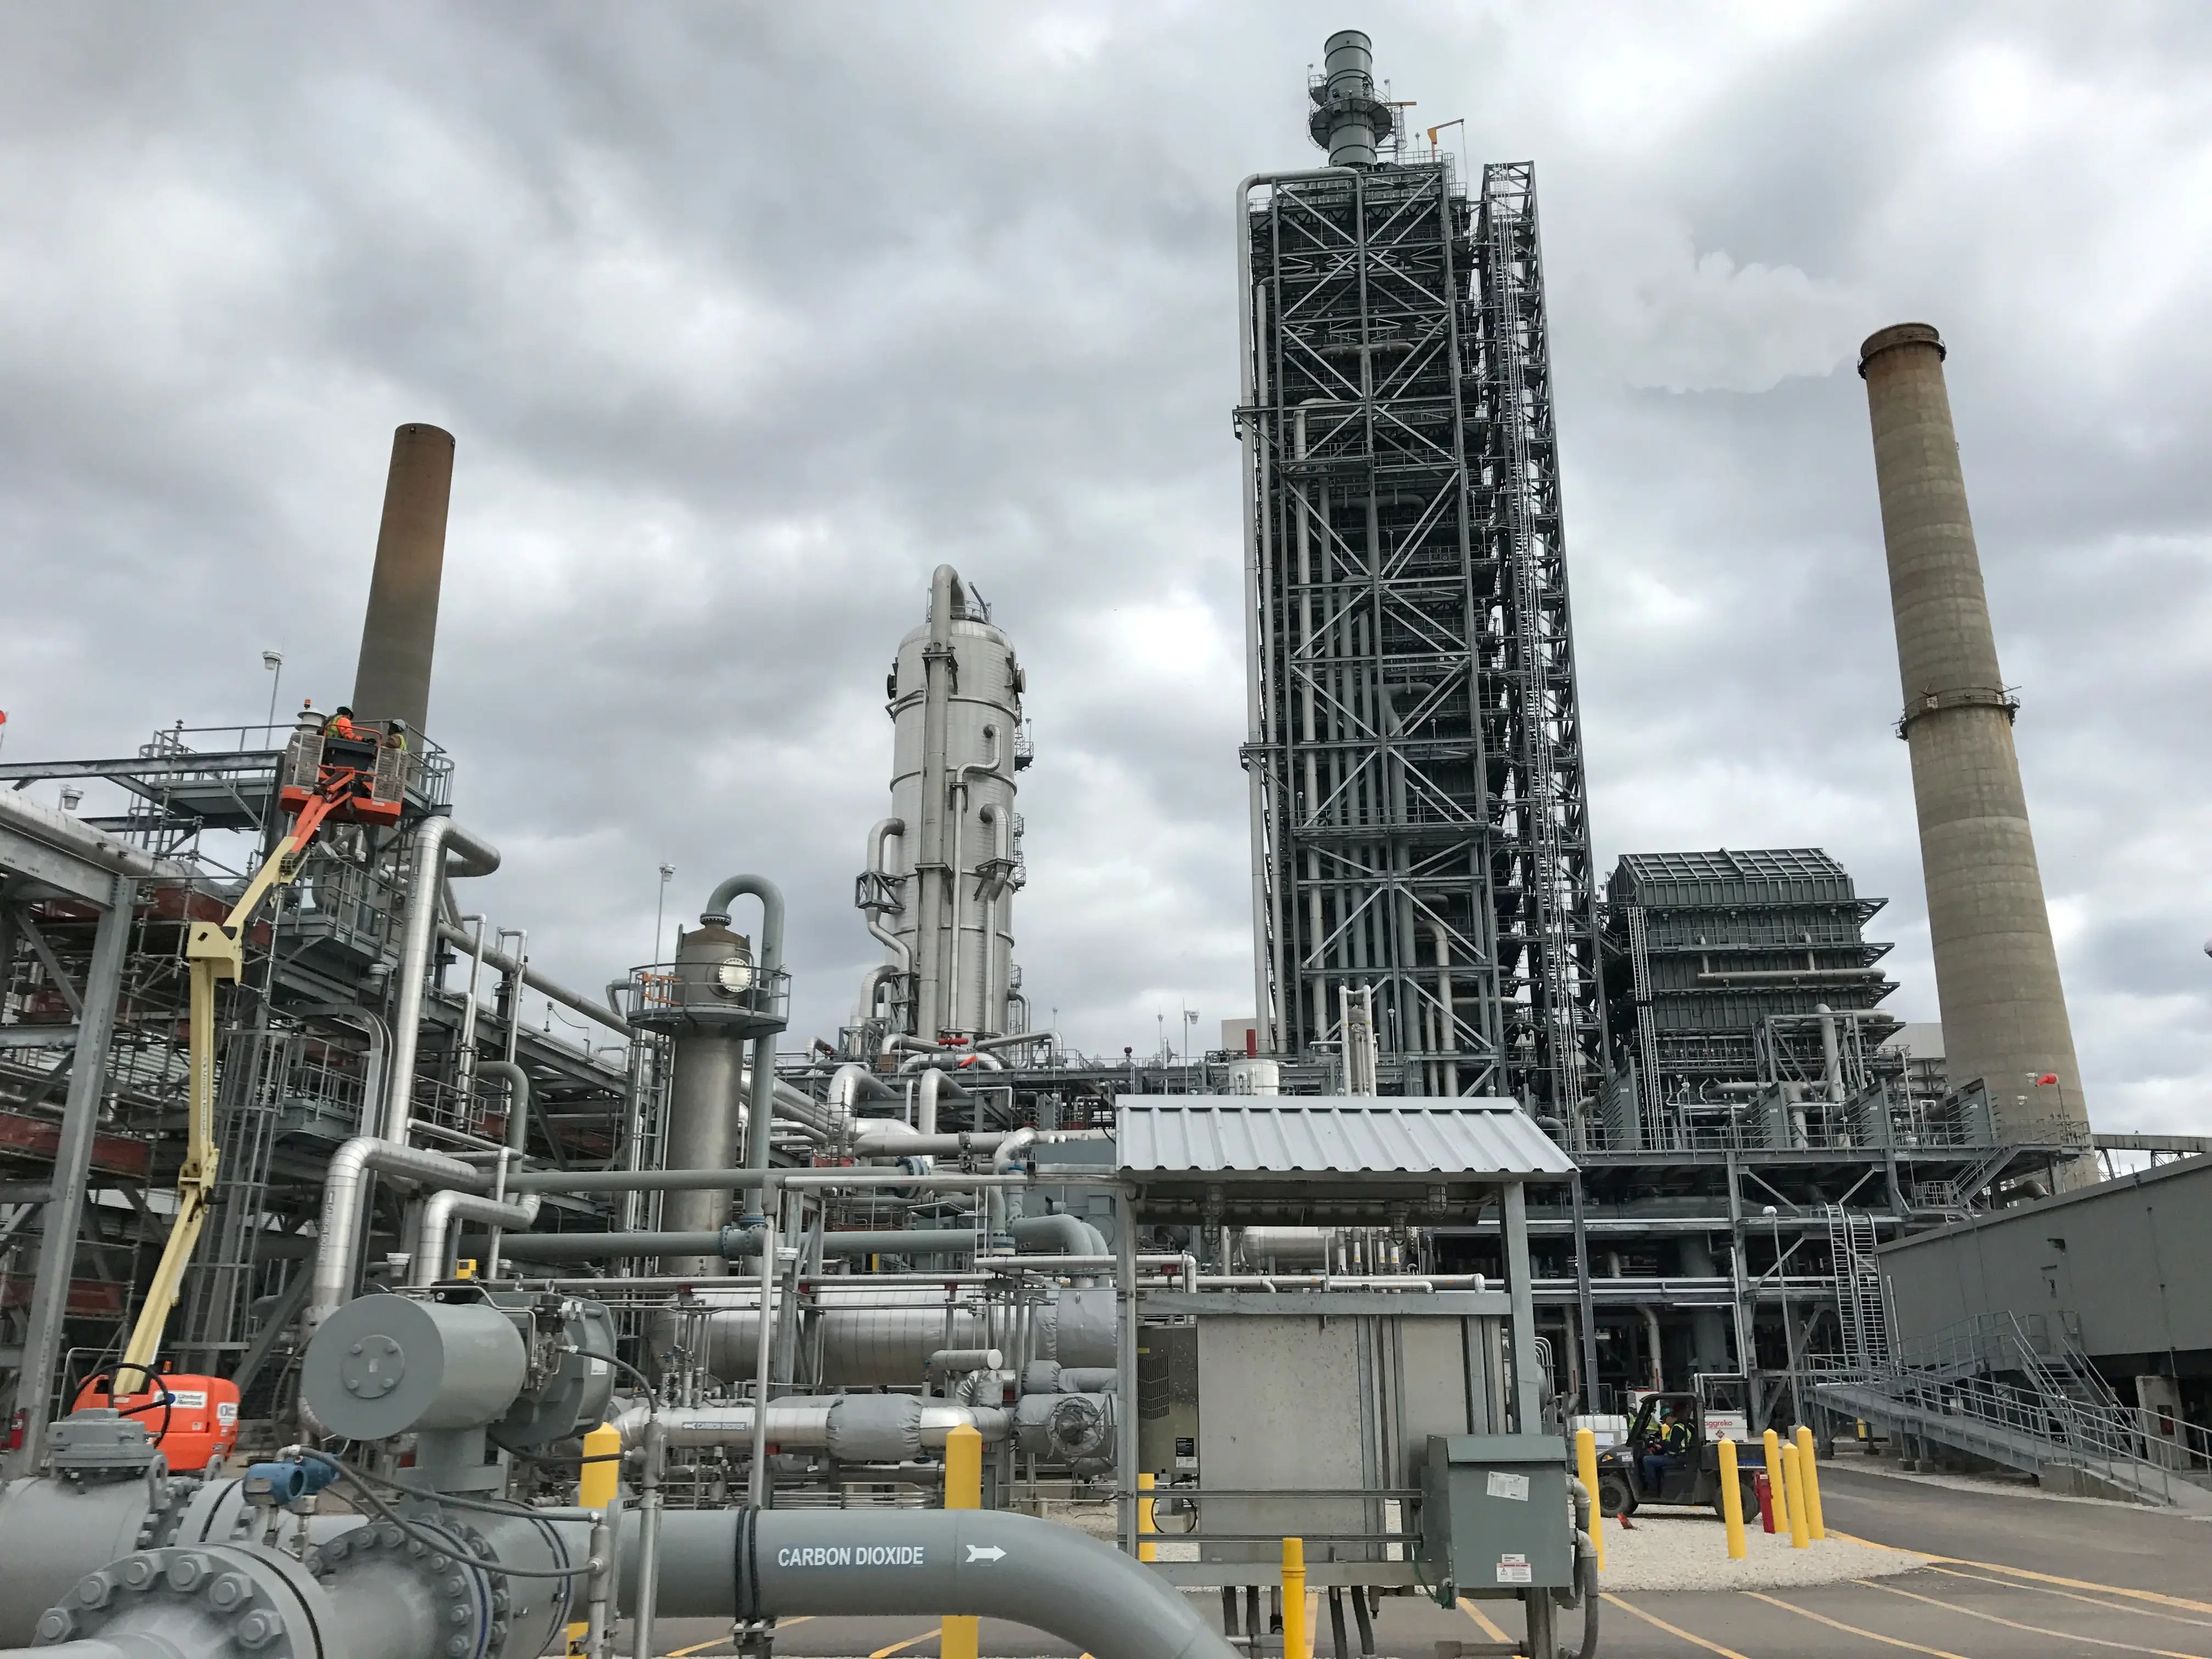 Equipamiento usado para capturar dióxido de carbono en una central eléctrica de carbón propiedad de NRG Energy en Thompsons, Texas, el 9 de enero de 2017.